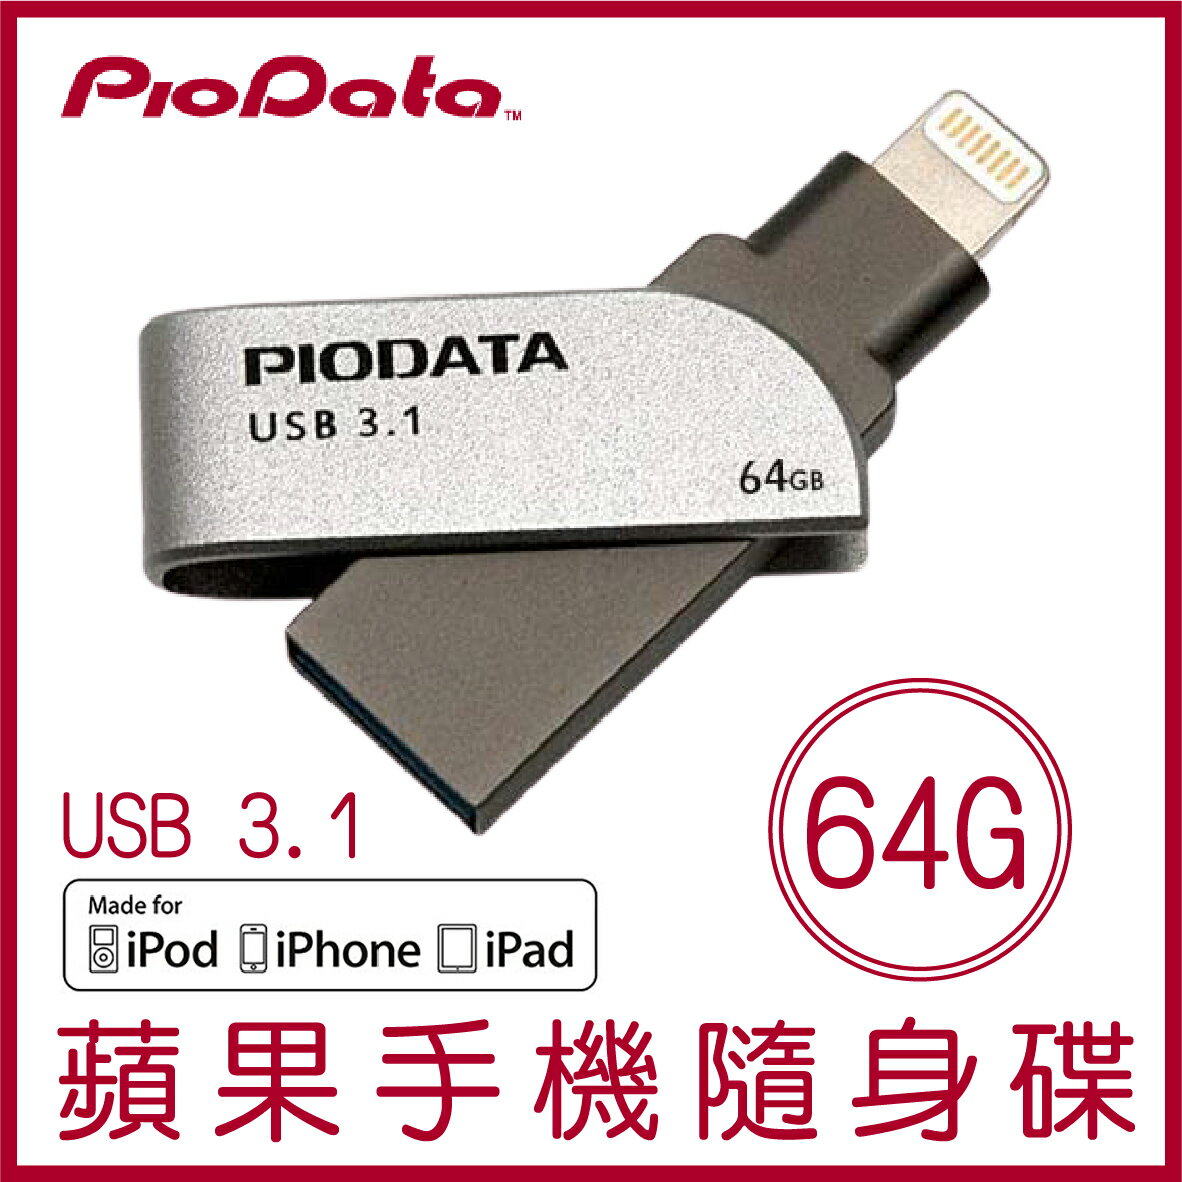 【最高22%點數】PIODATA iXflash 64GB Lightning USB3.1 蘋果隨身碟 iOS專用 OTG 雙用隨身碟【限定樂天APP下單】